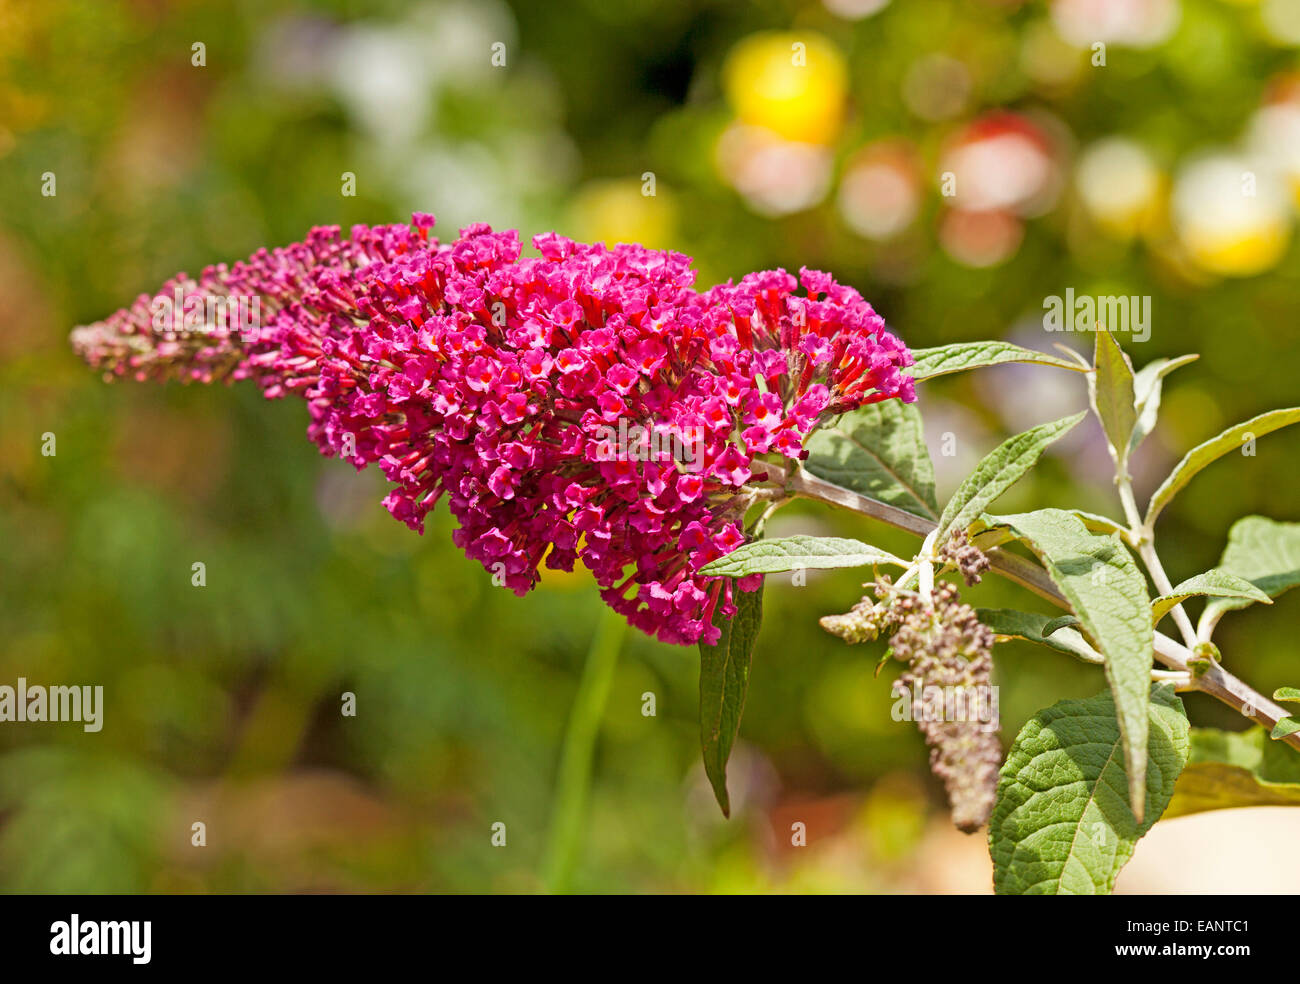 Rouge clair / fleurs rose profond de Buddleja davidii Buzz series 'Velvet' avec des feuilles vert clair à l'arrière-plan vert vif Banque D'Images